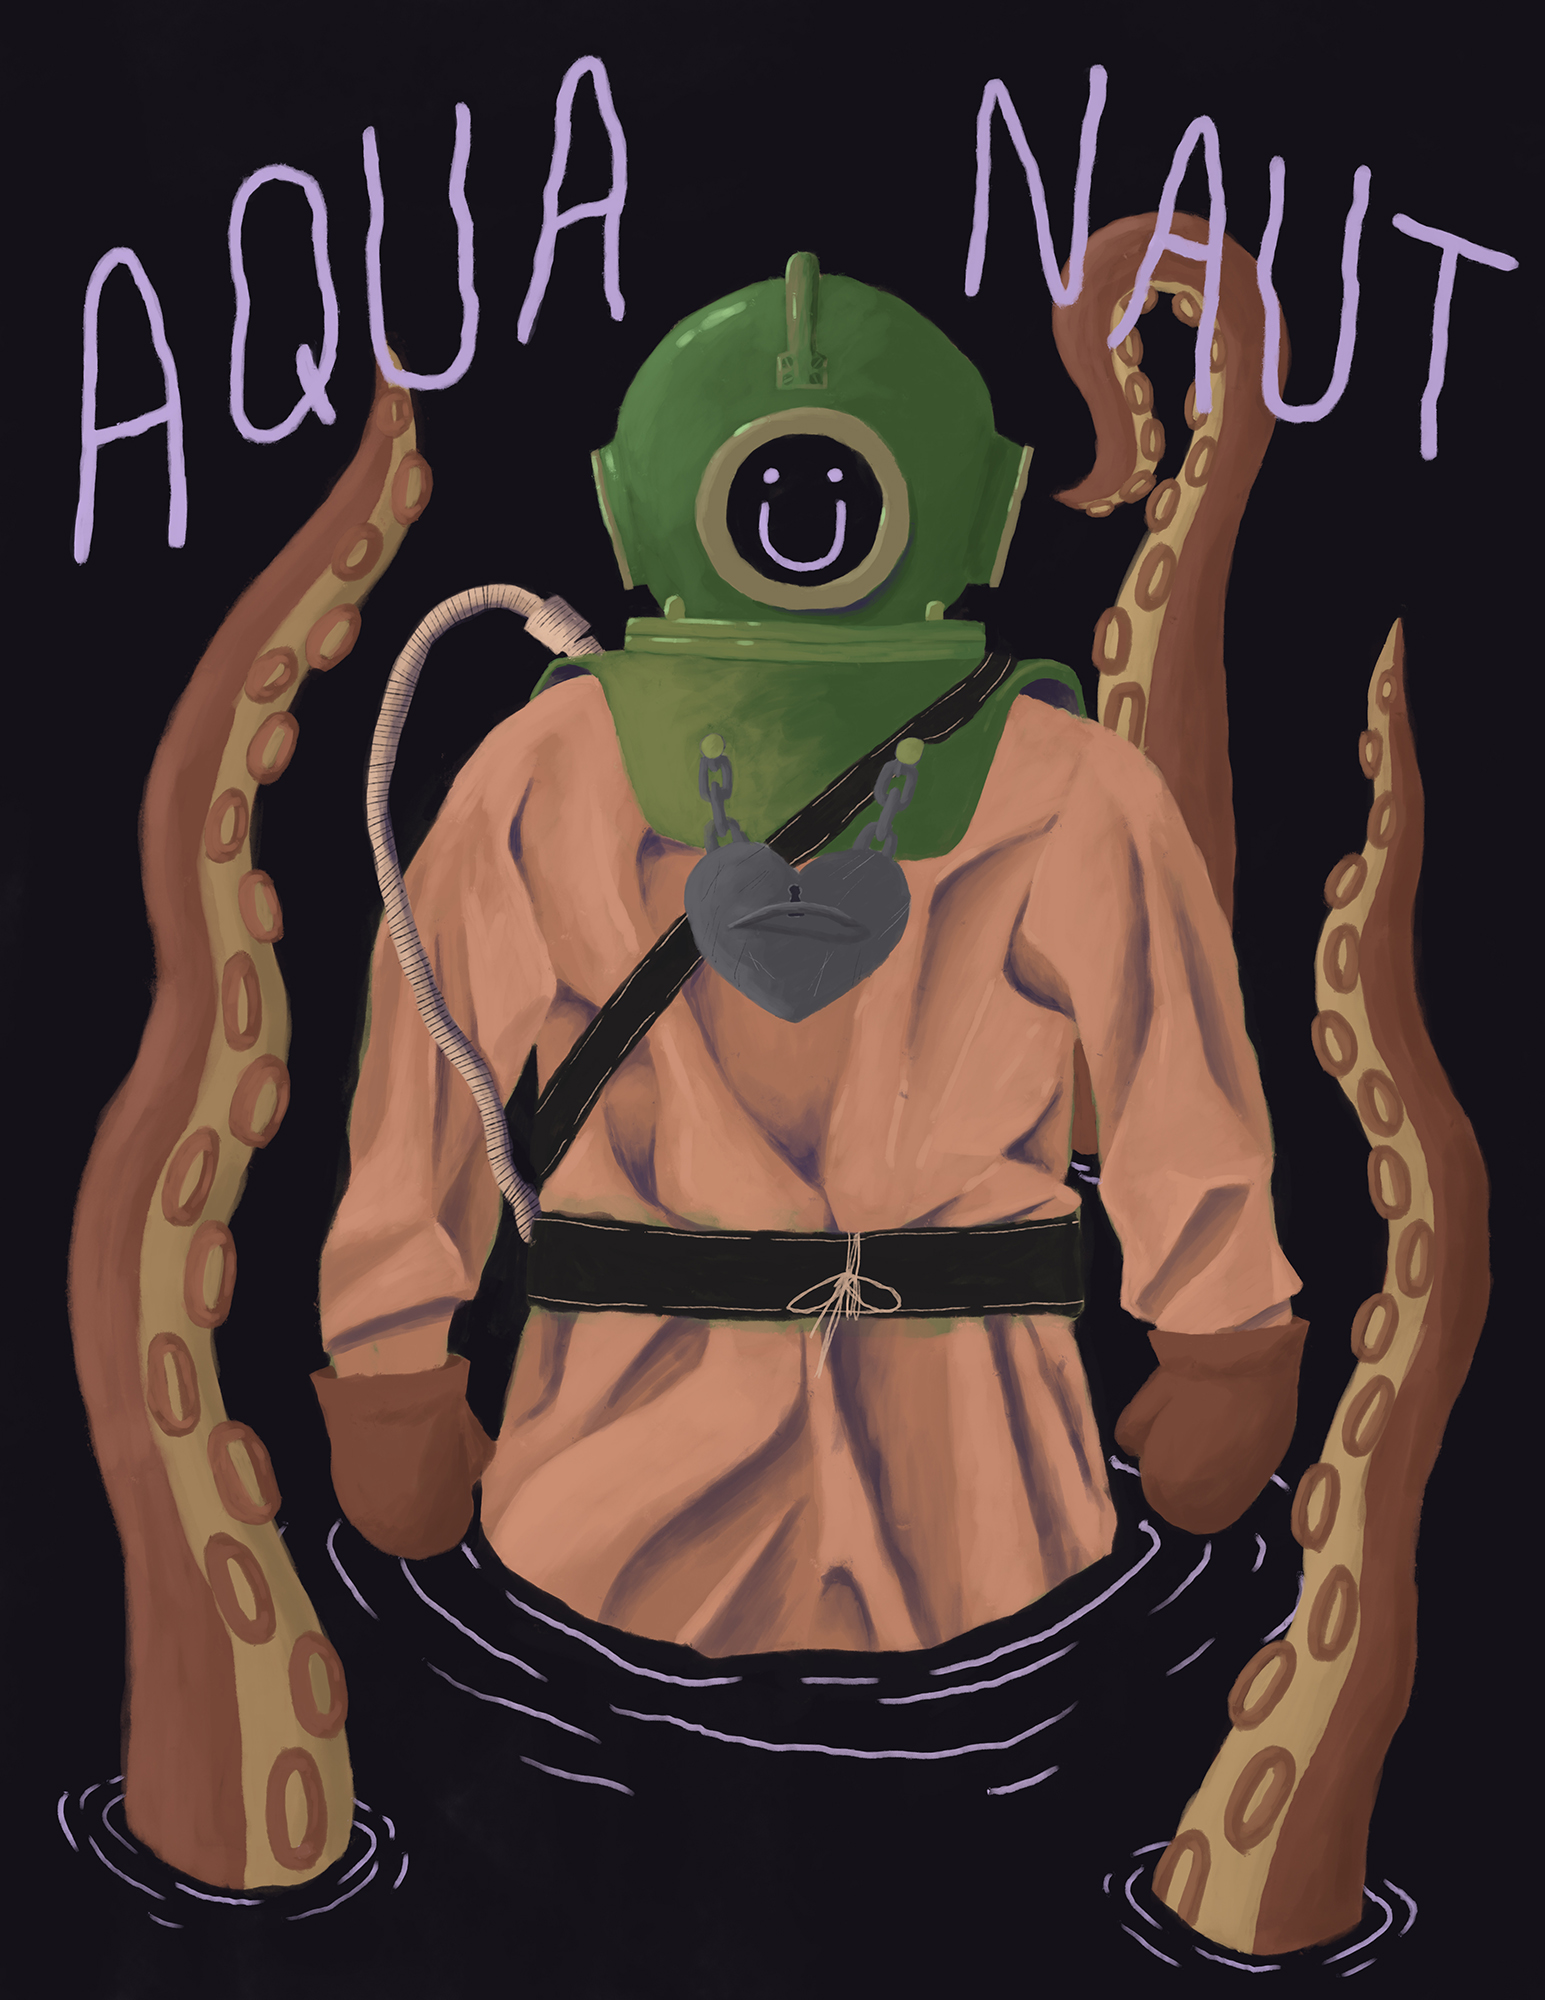 Aquanaut